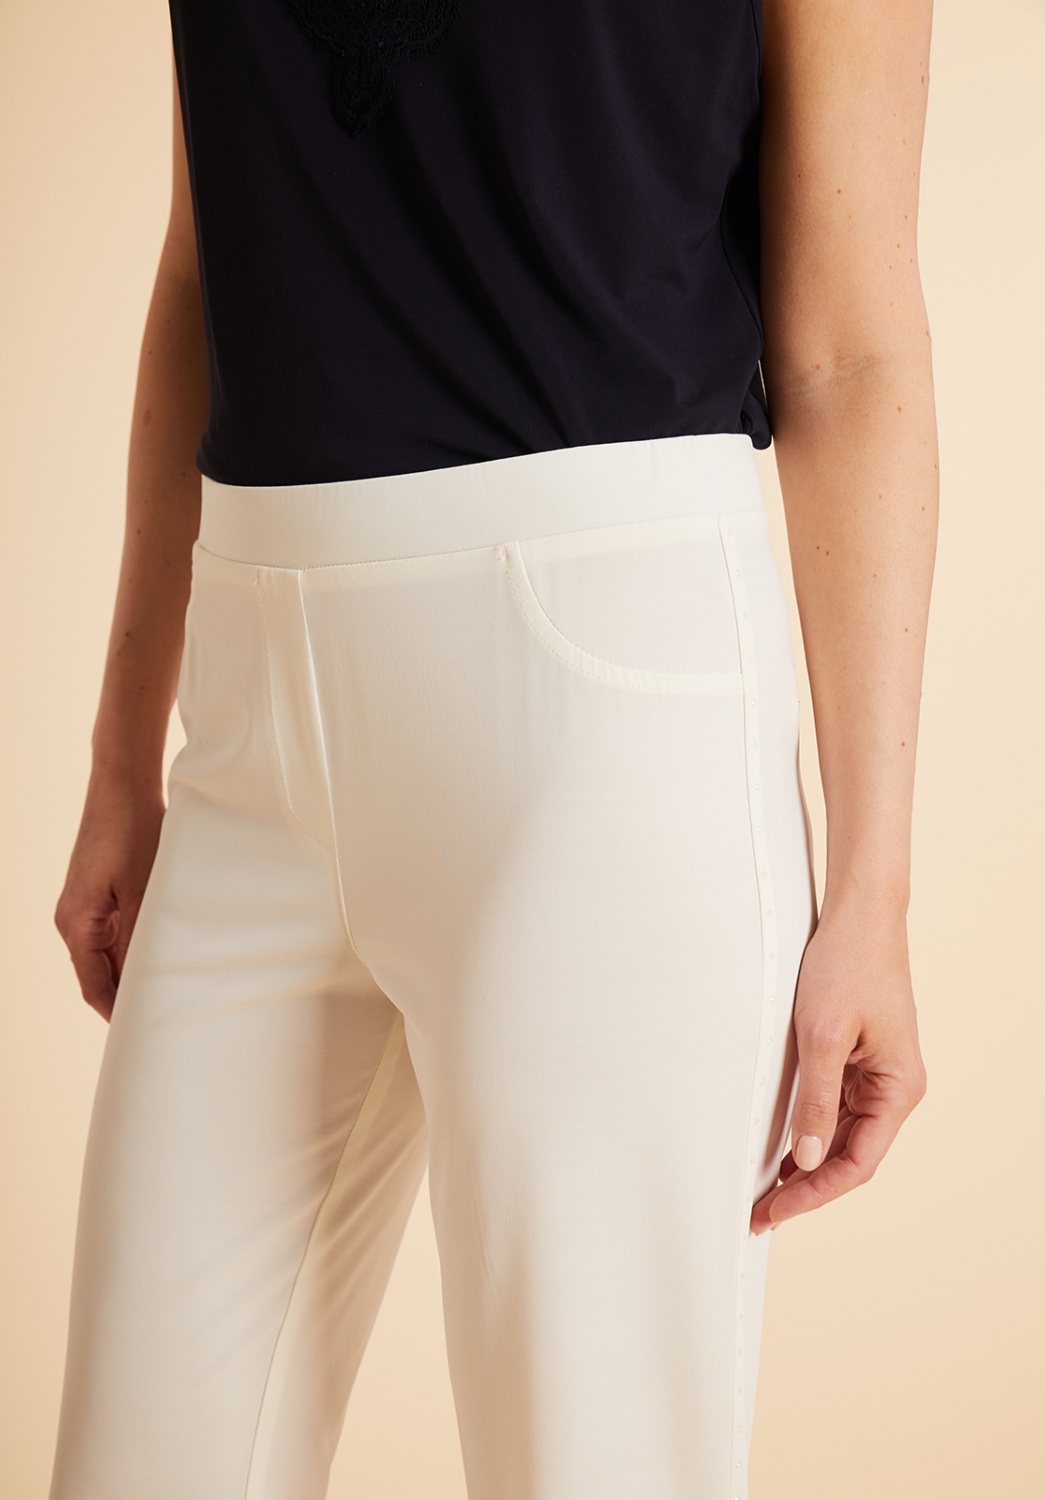 Pantalon tricoté blanc avec strass 2